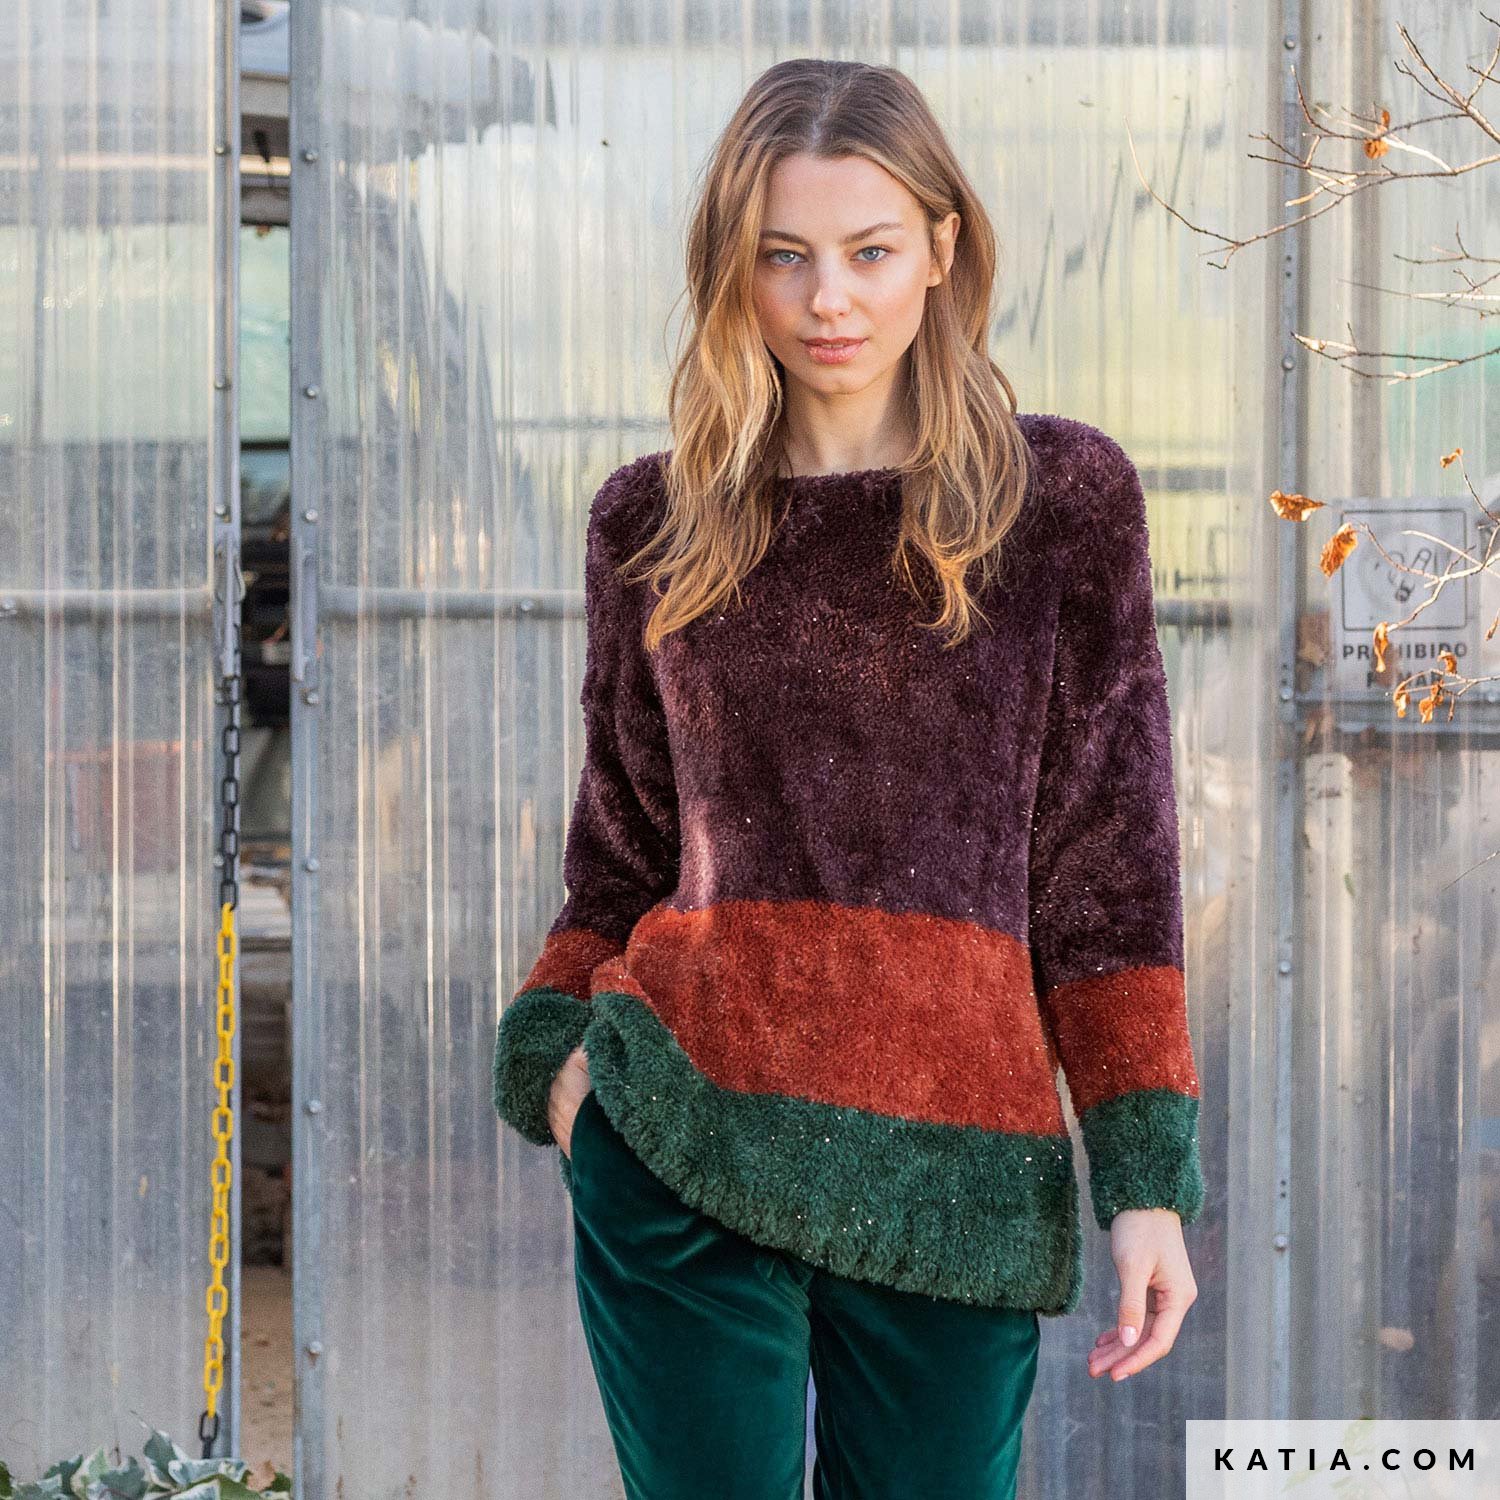 models & patterns | Katia.com